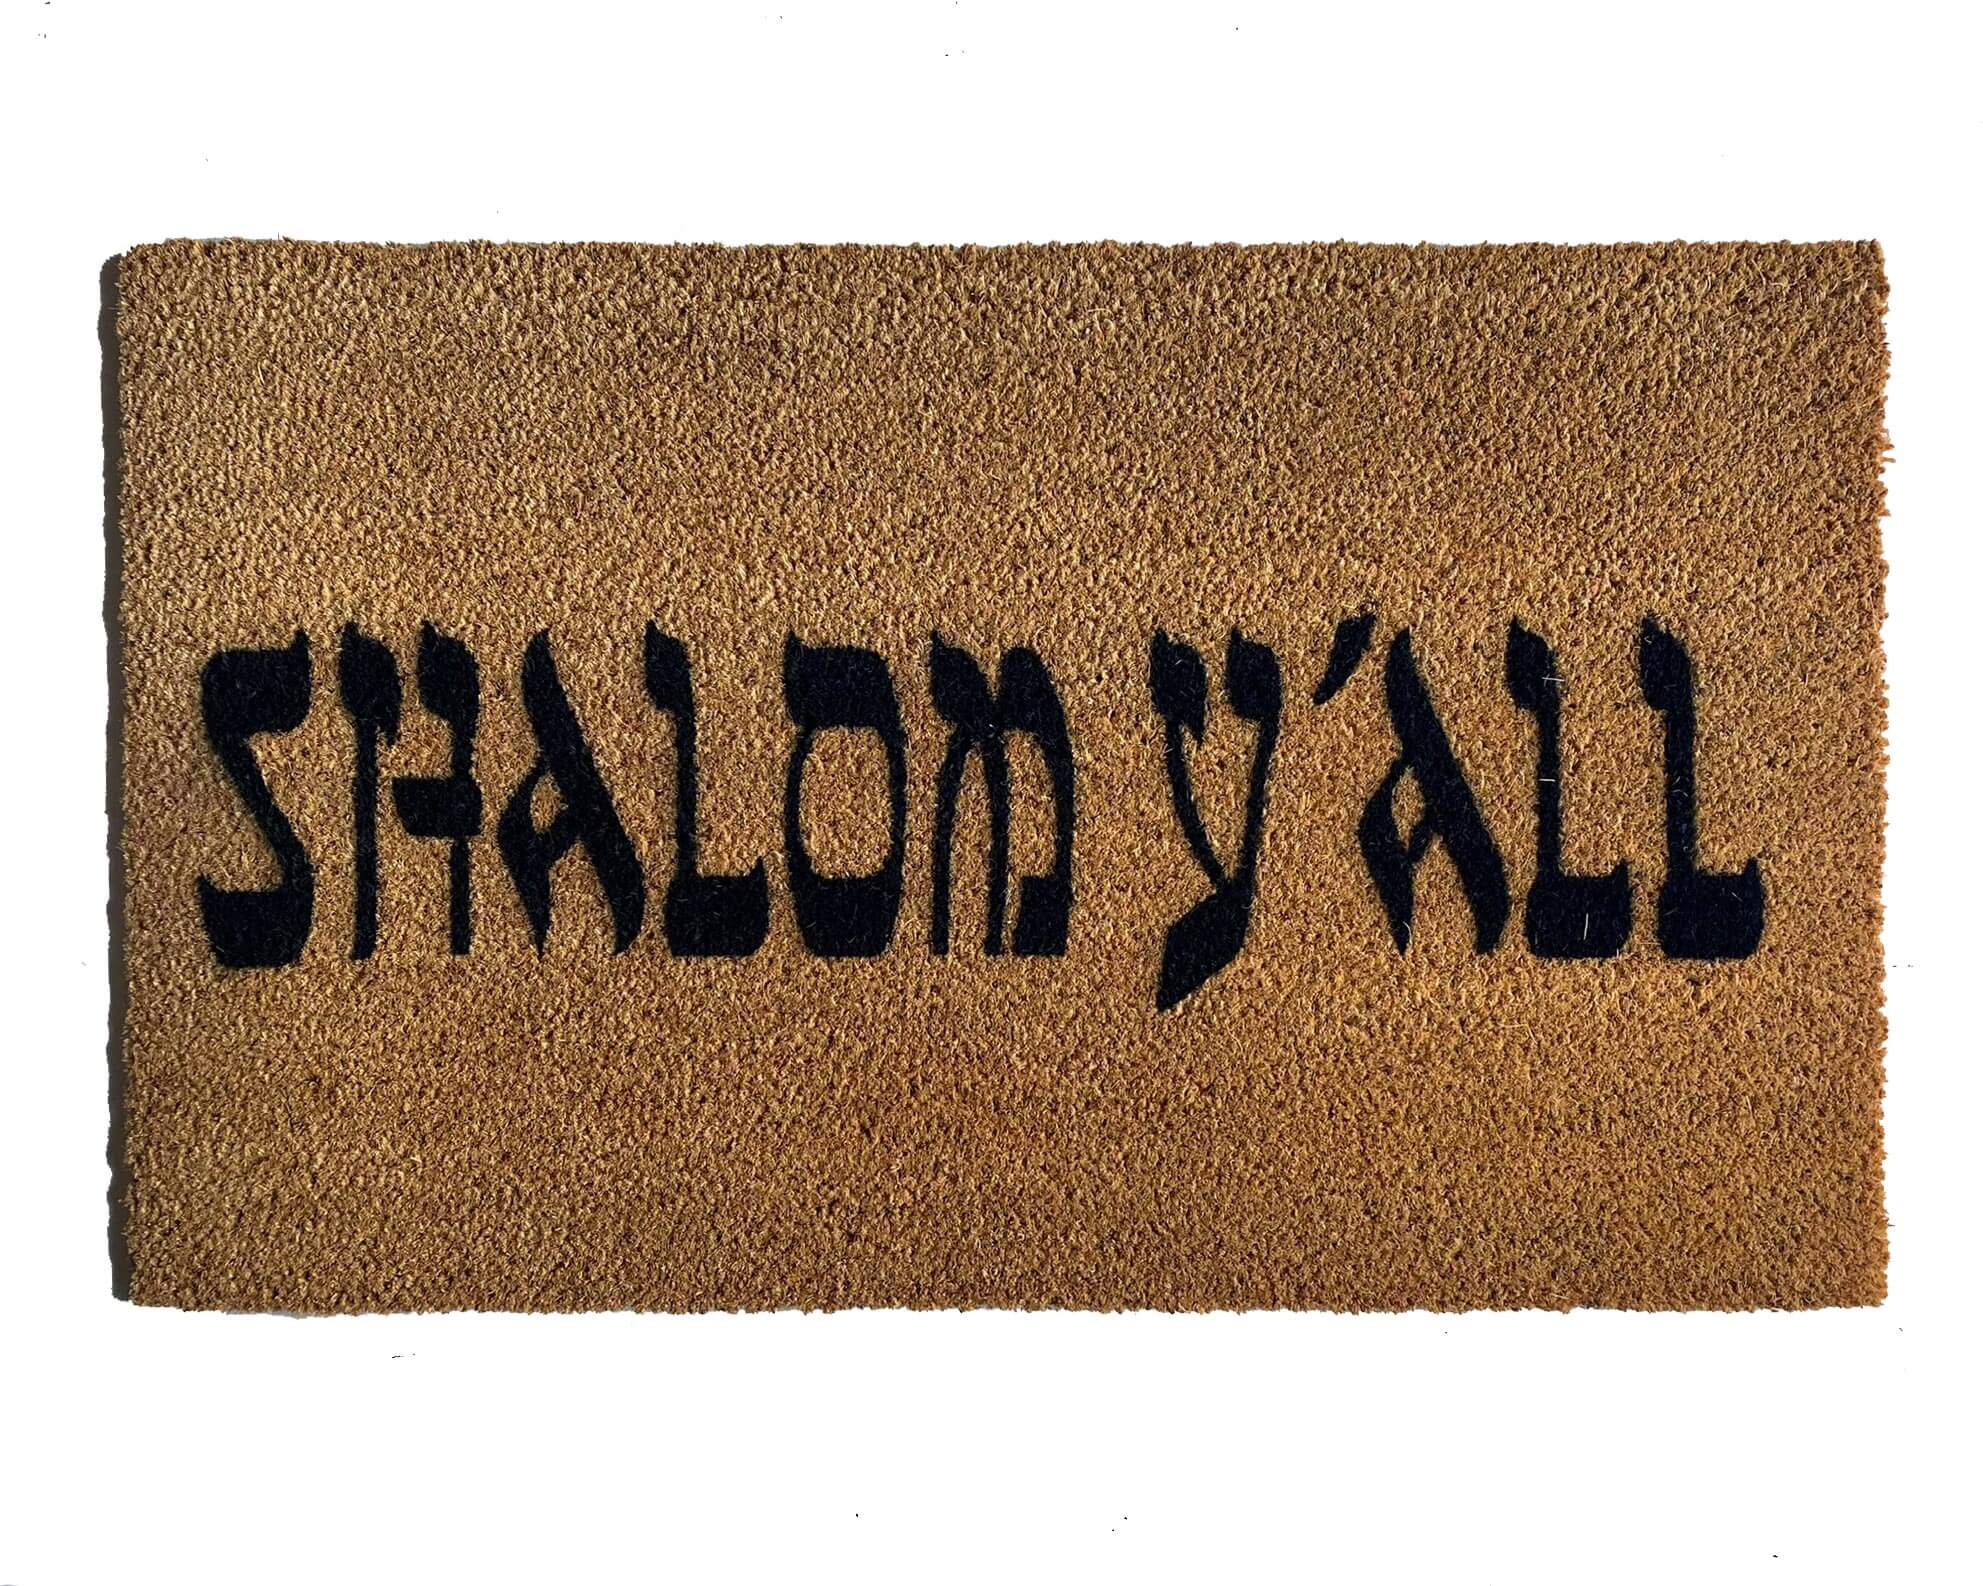 Shalom Doormat, Jewish Doormats